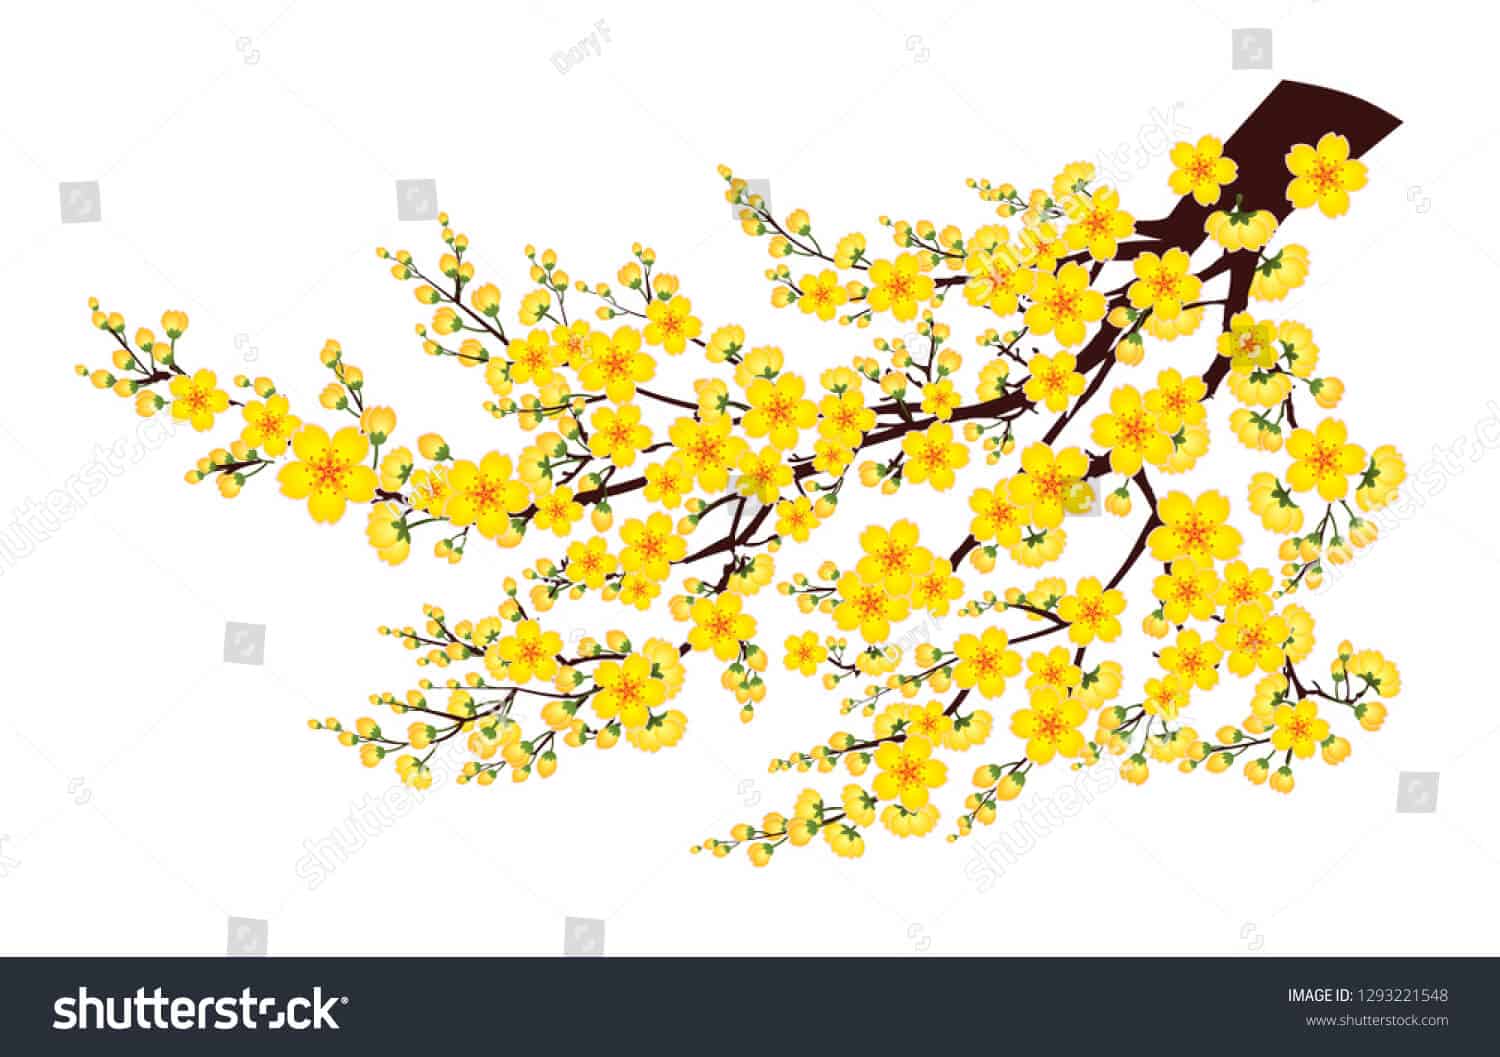 14 nghìn hình ảnh hoa mai vàng chất lượng cao trên Shutterstock